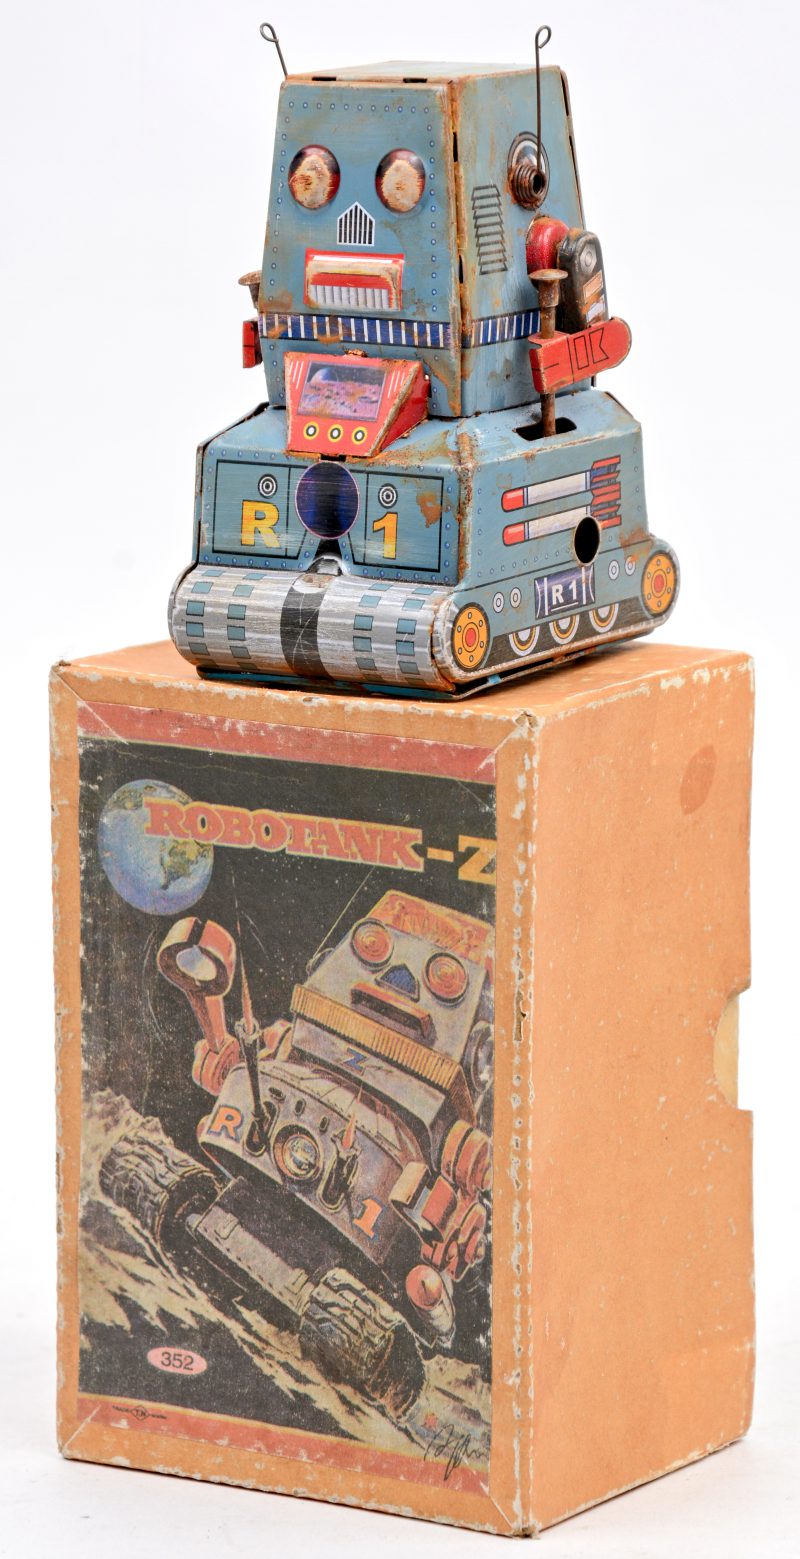 “Robotank-Z”. Een tinnen speelgoedrobot met opwindmechanisme. In originele doos. Jaren ’60. Werkende staat, gebruikssporen.